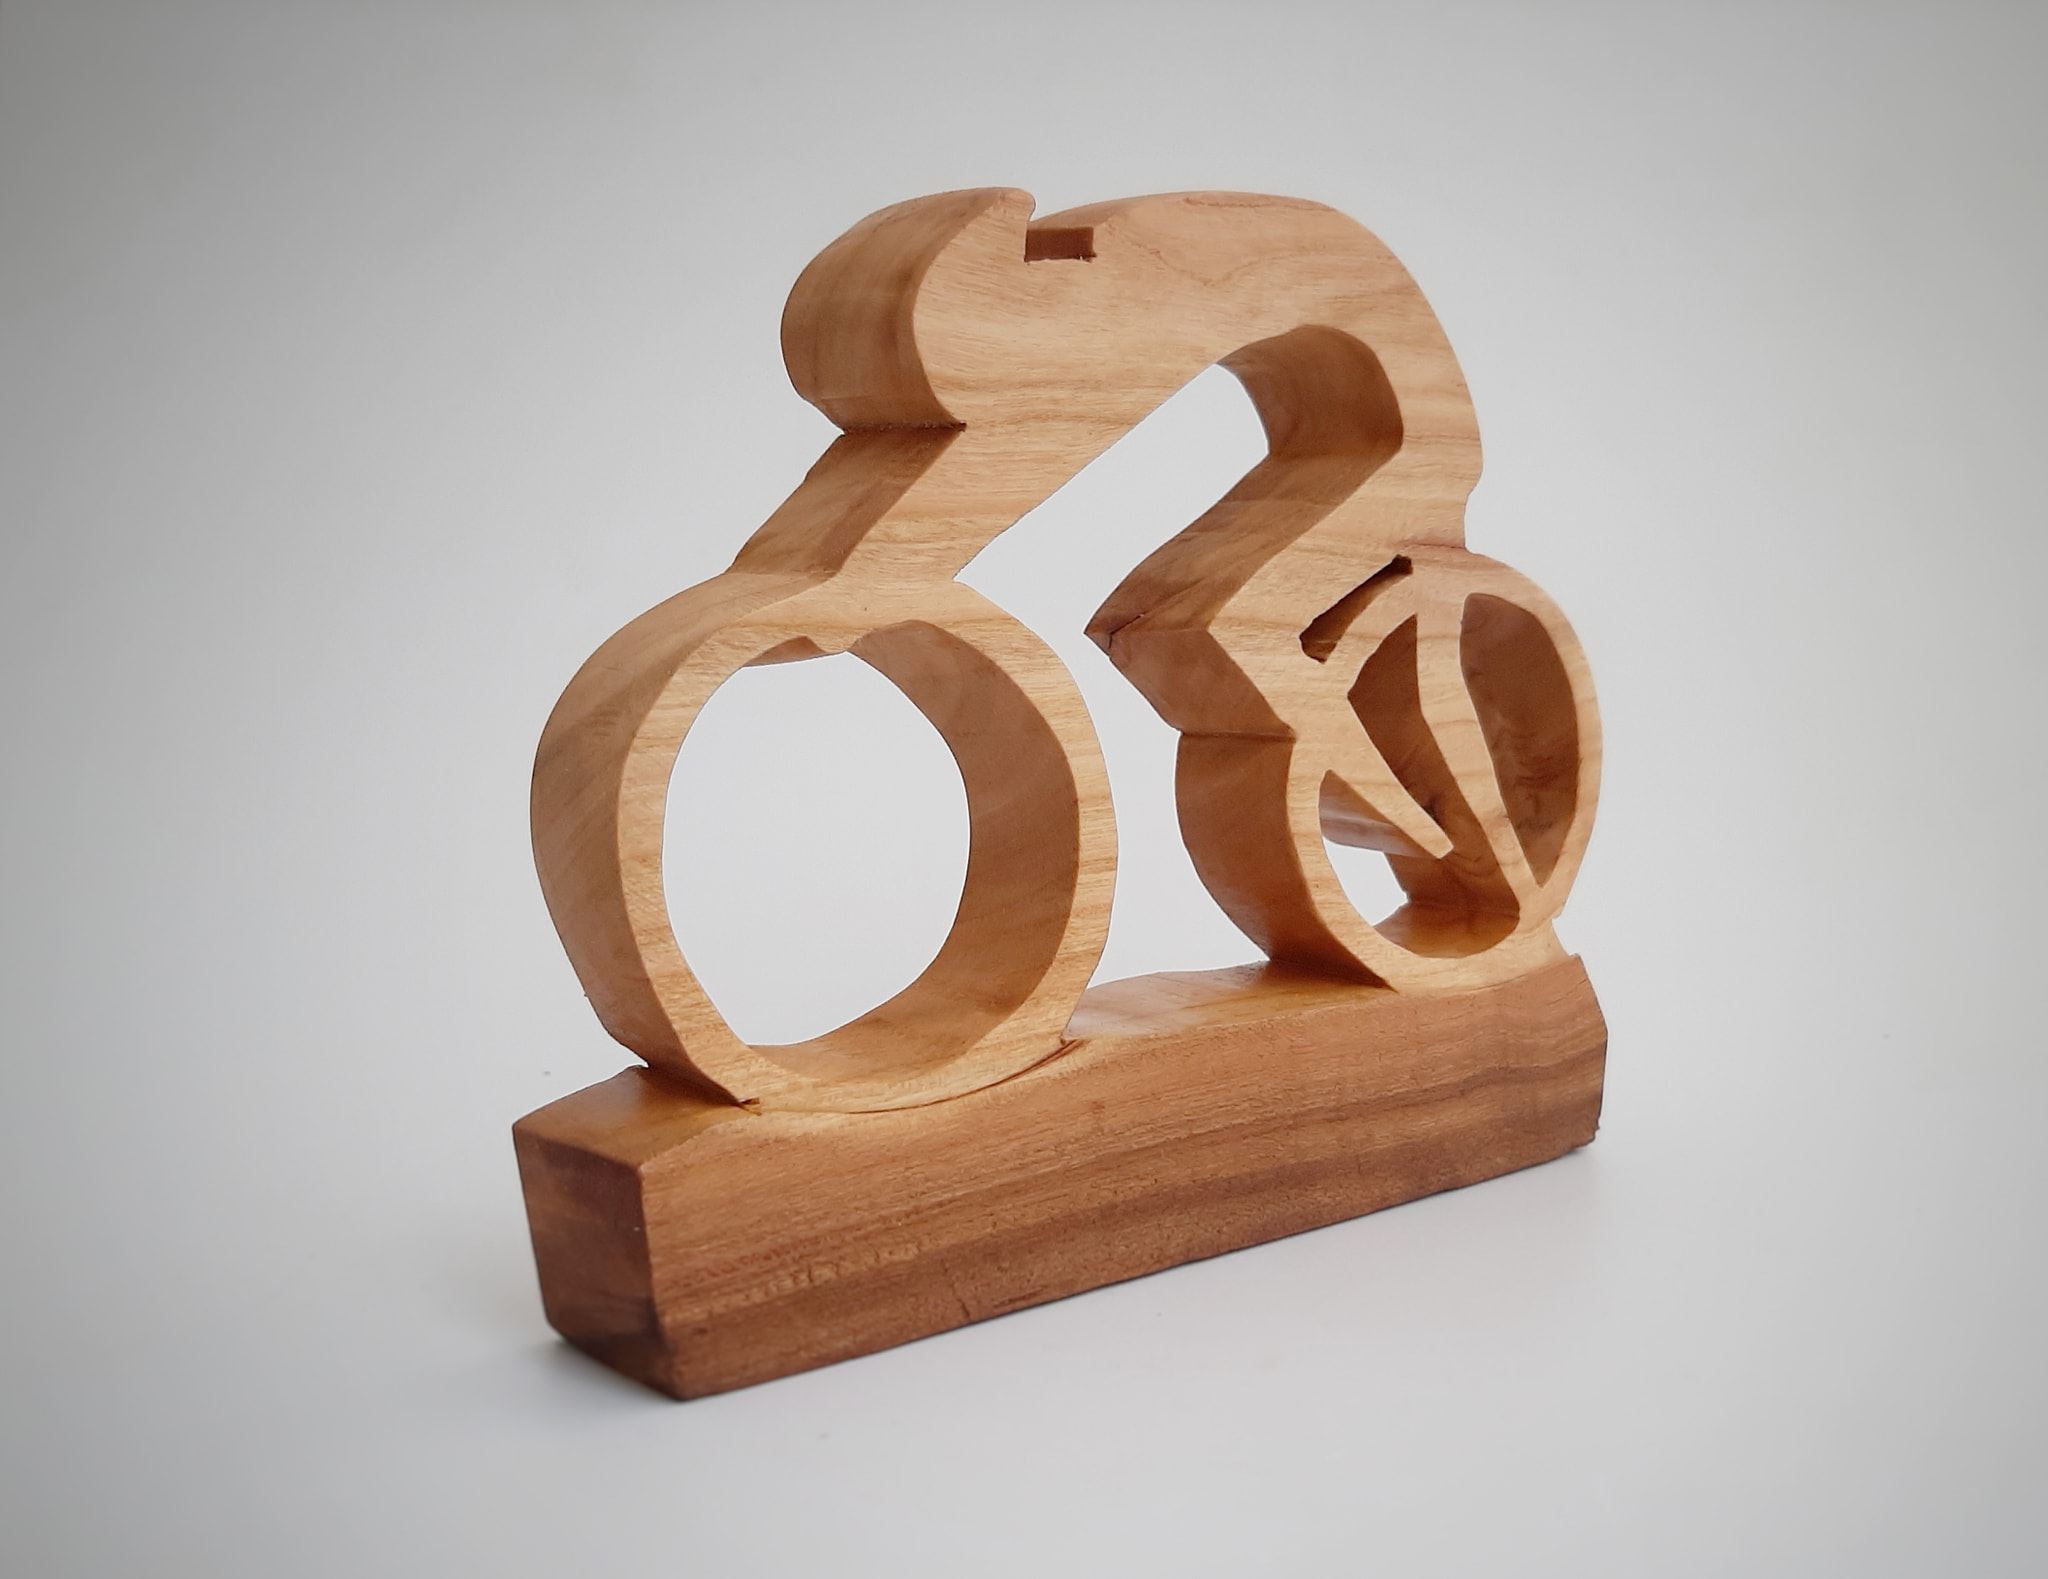 Biciclist stilizat din lemn de cireș